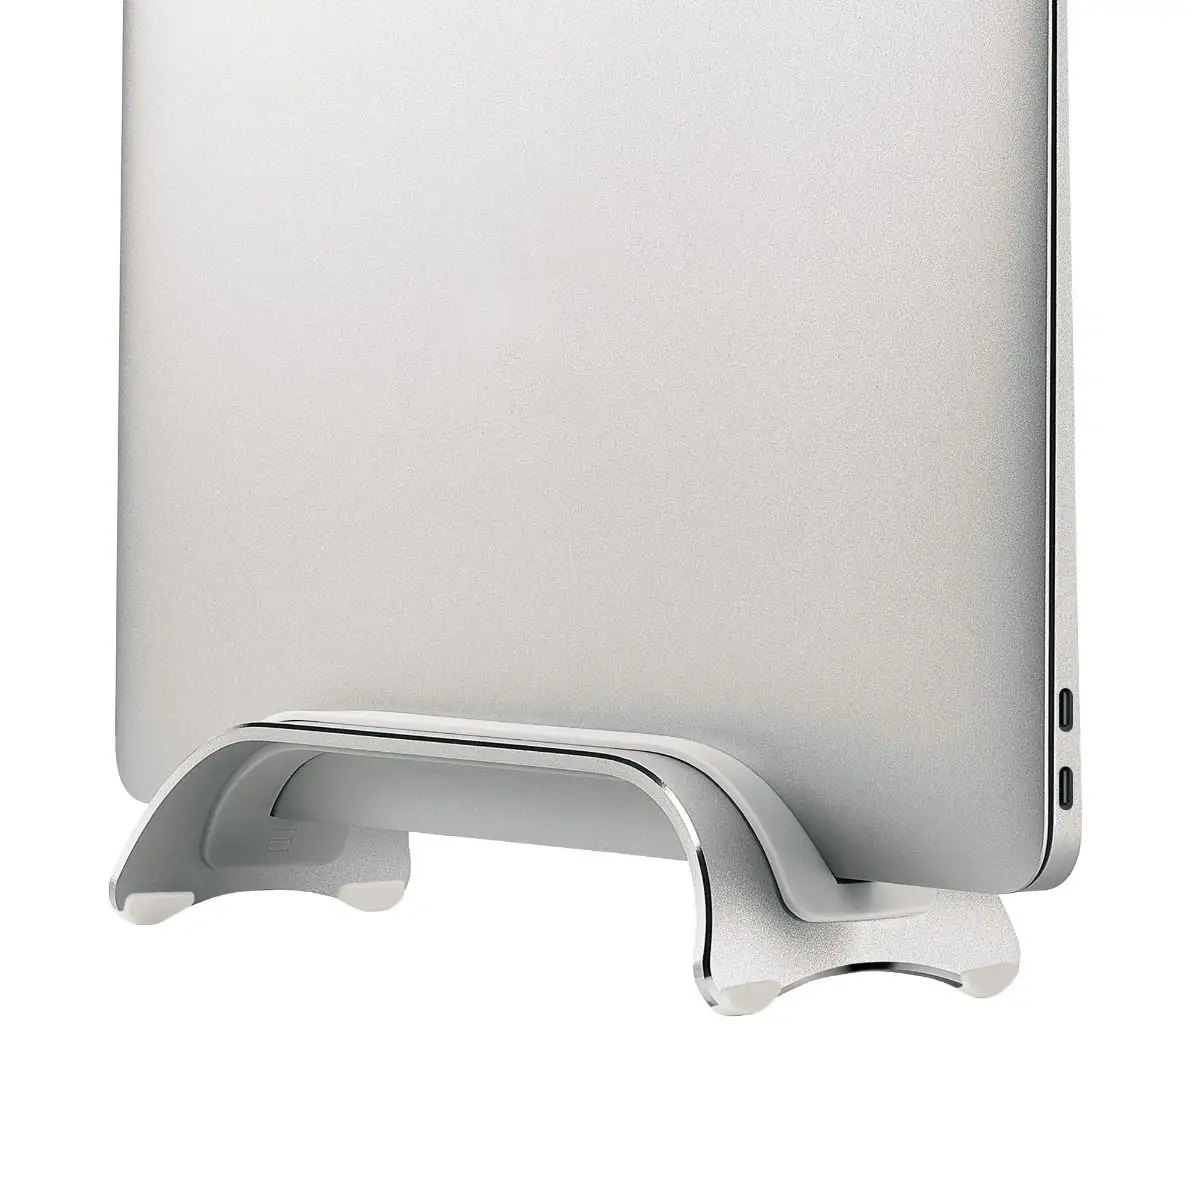 Support Vertical en aluminium pour ordinateur portable et Notebook